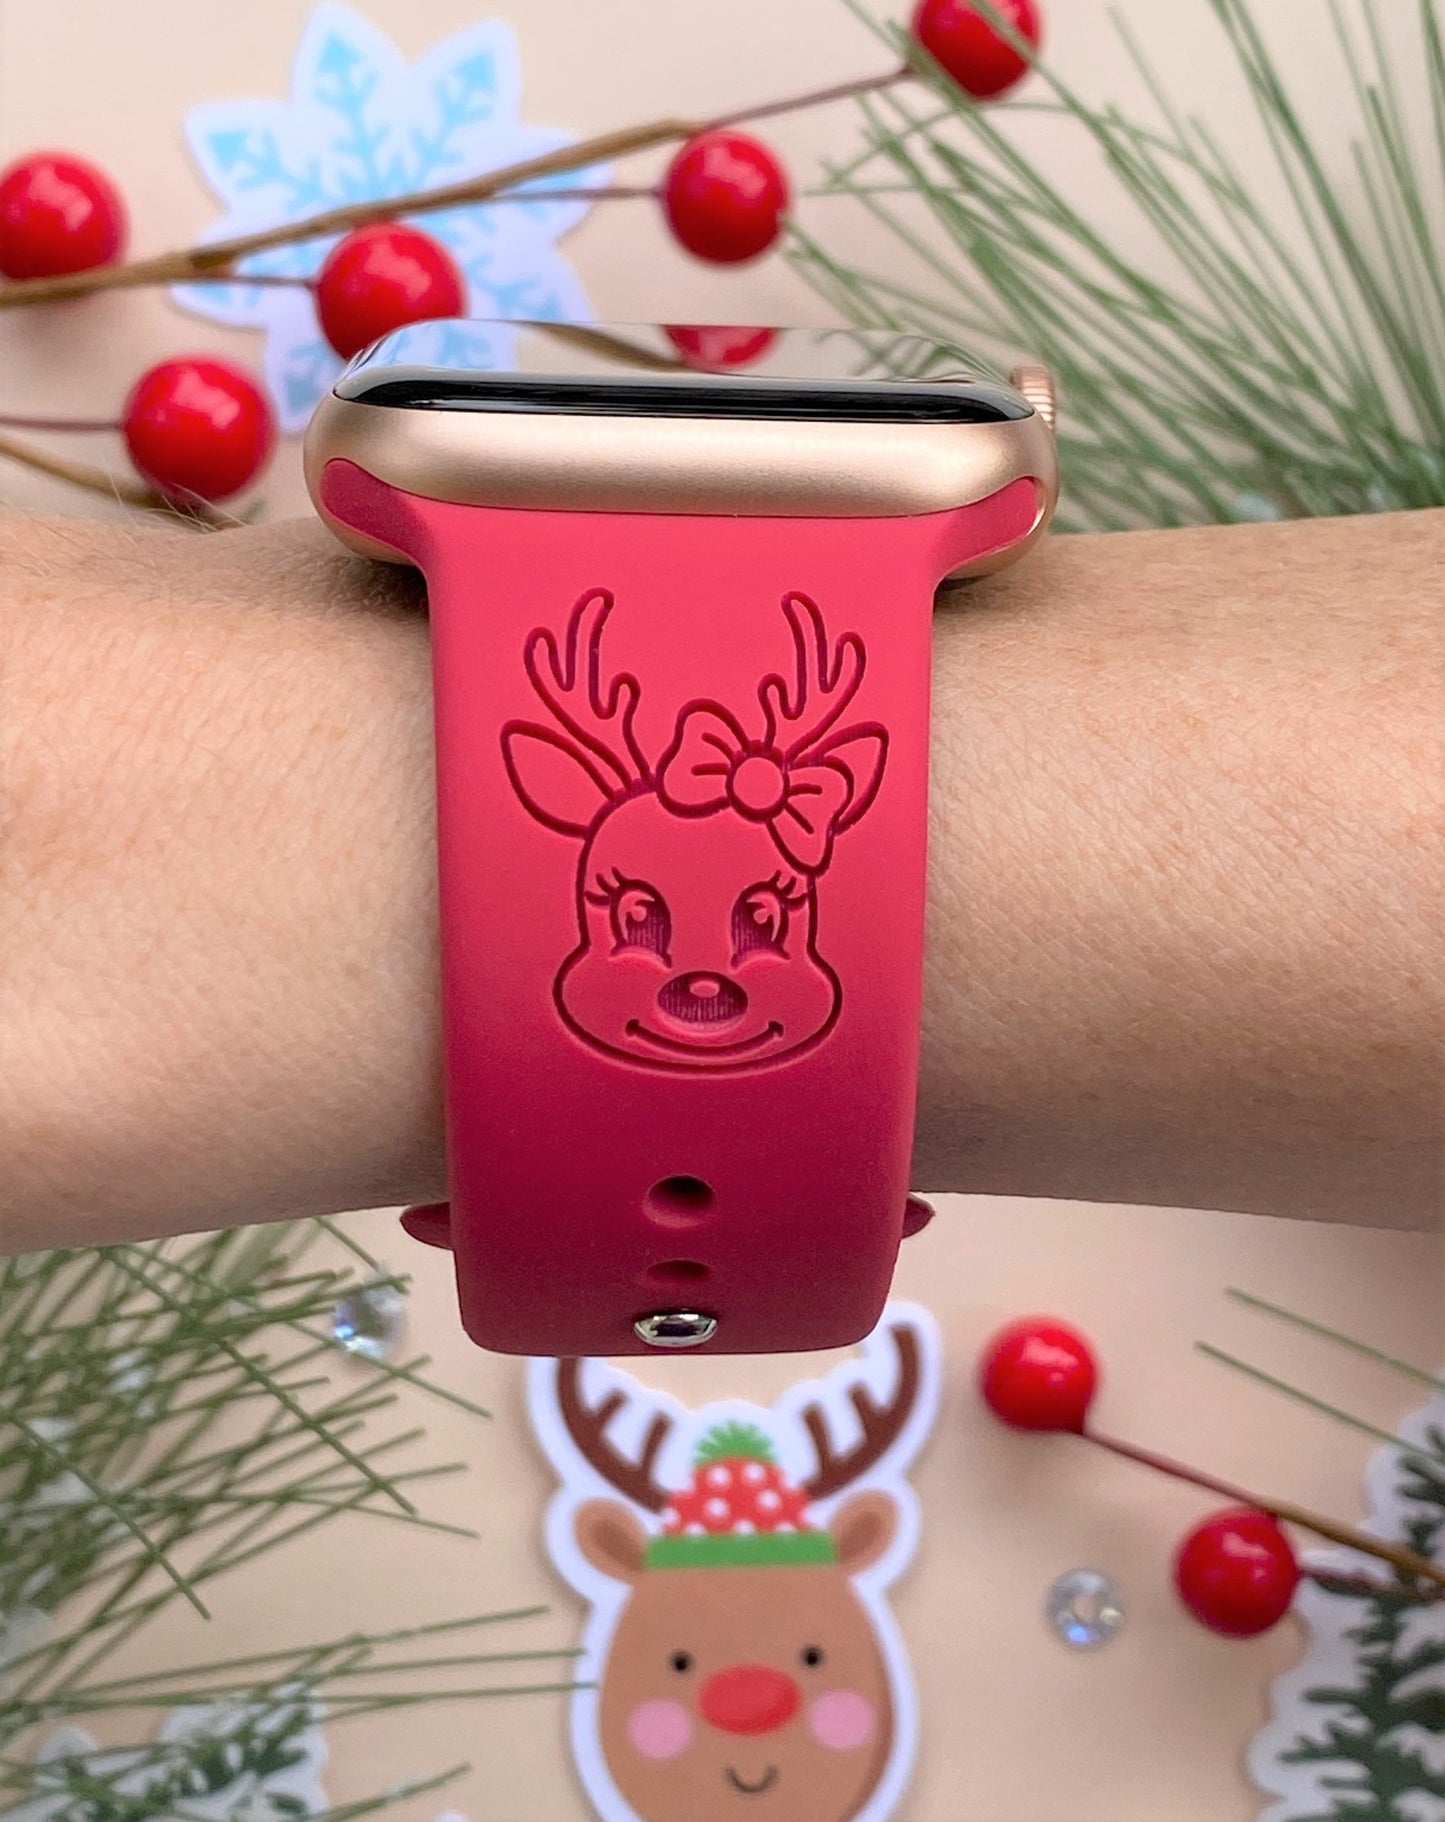 Cute Reindeer Apple Watch Band